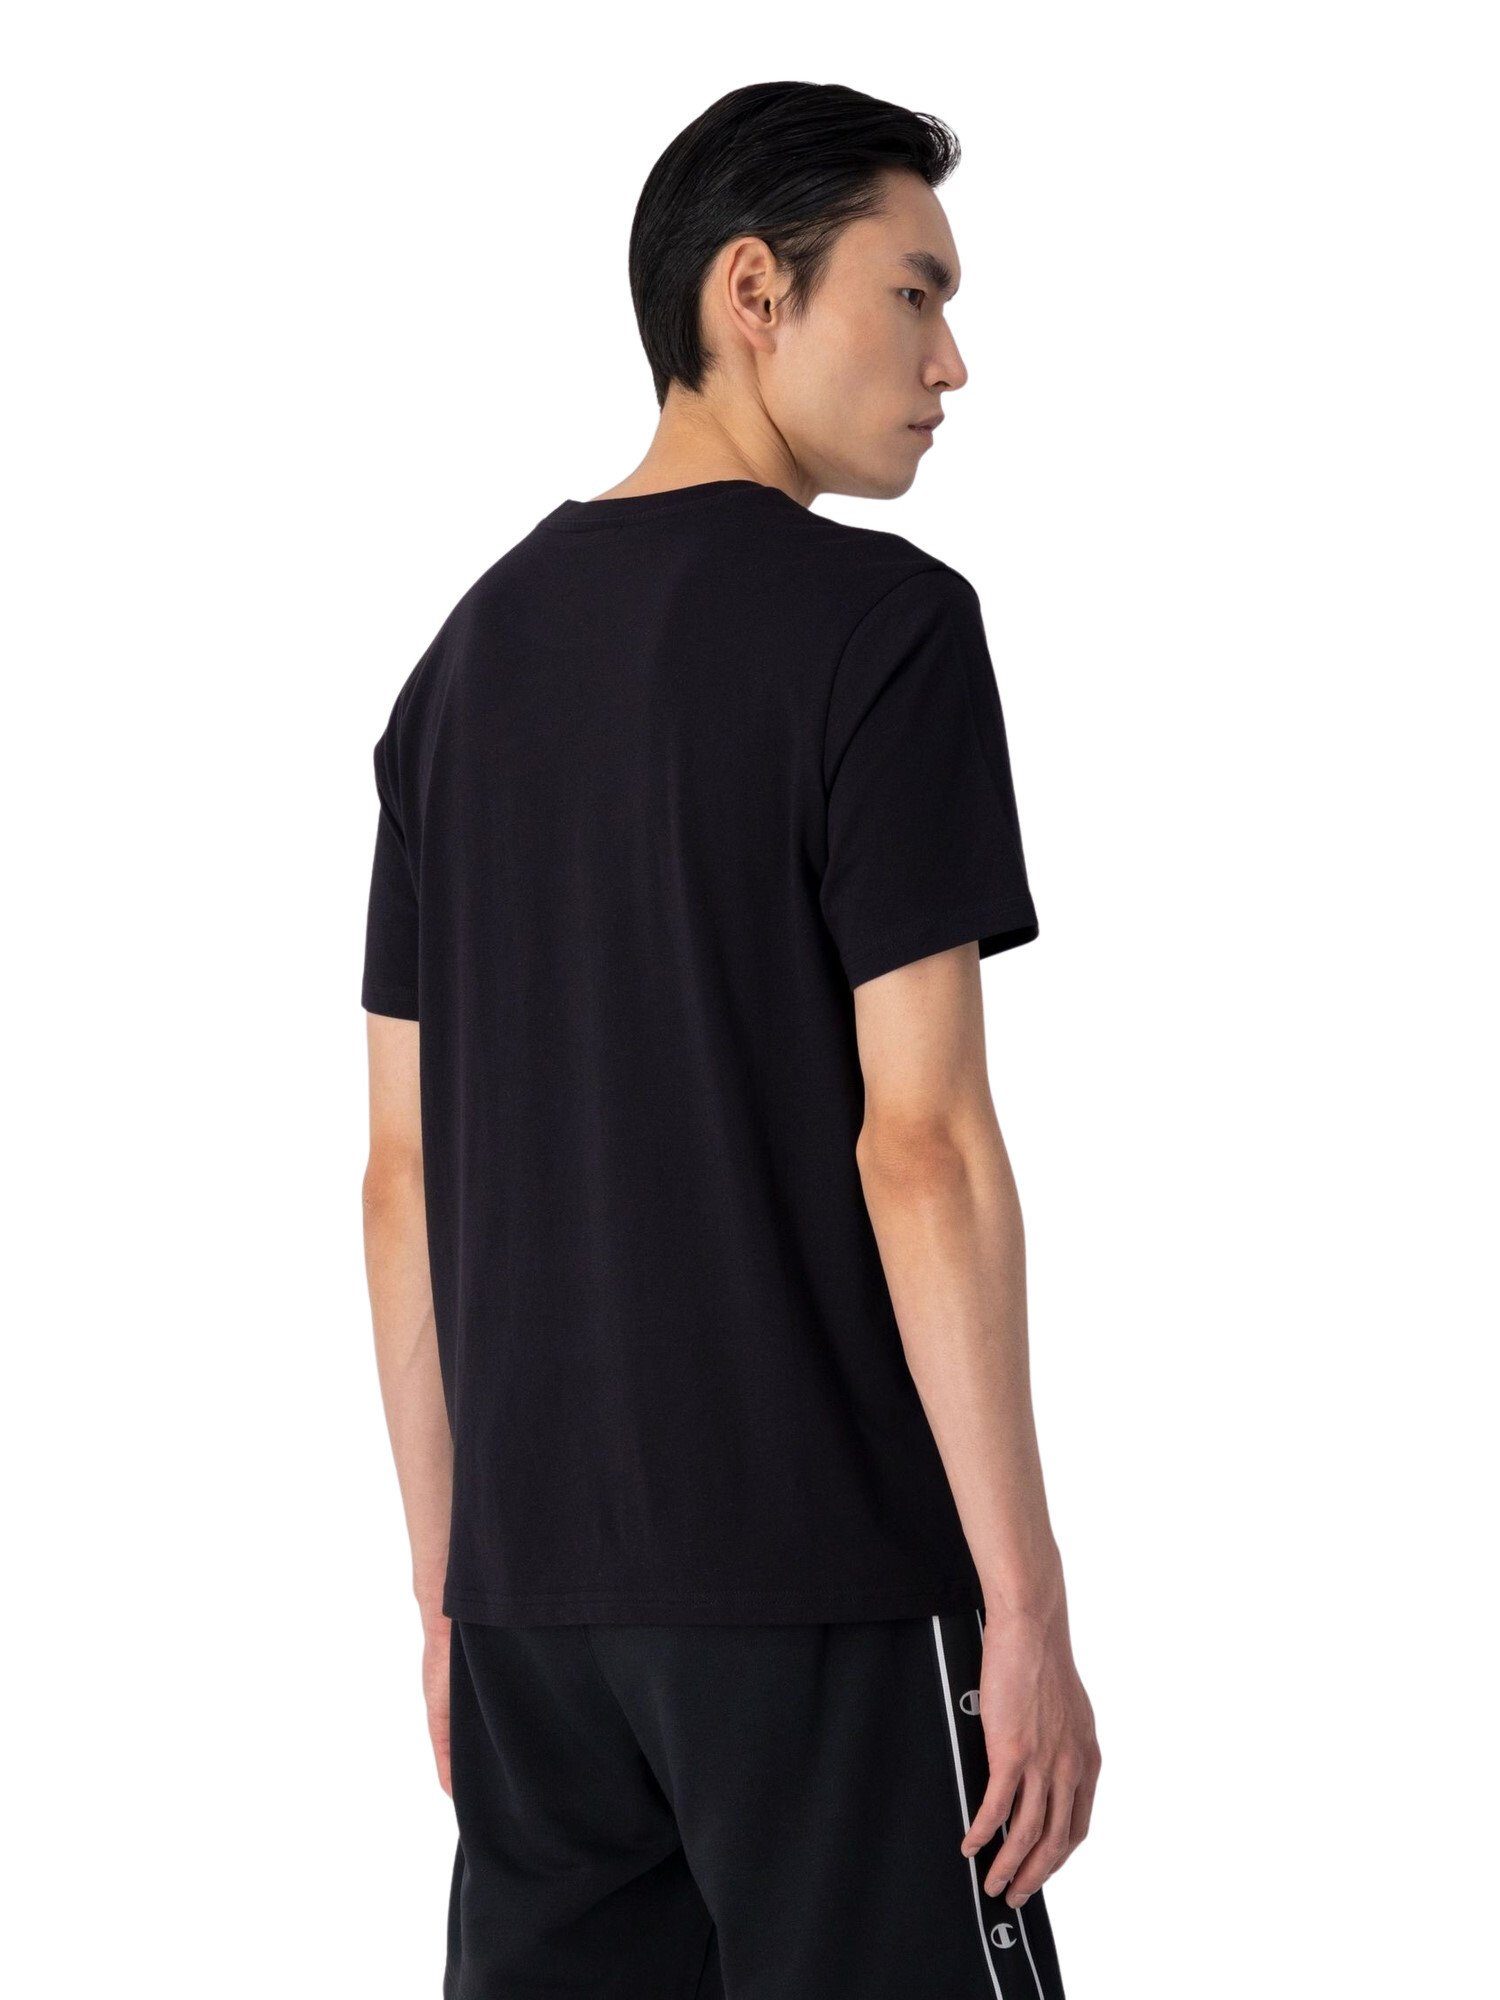 Champion T-Shirt Shirt Rundhals-T-Shirt aus Baumwolle mit schwarz